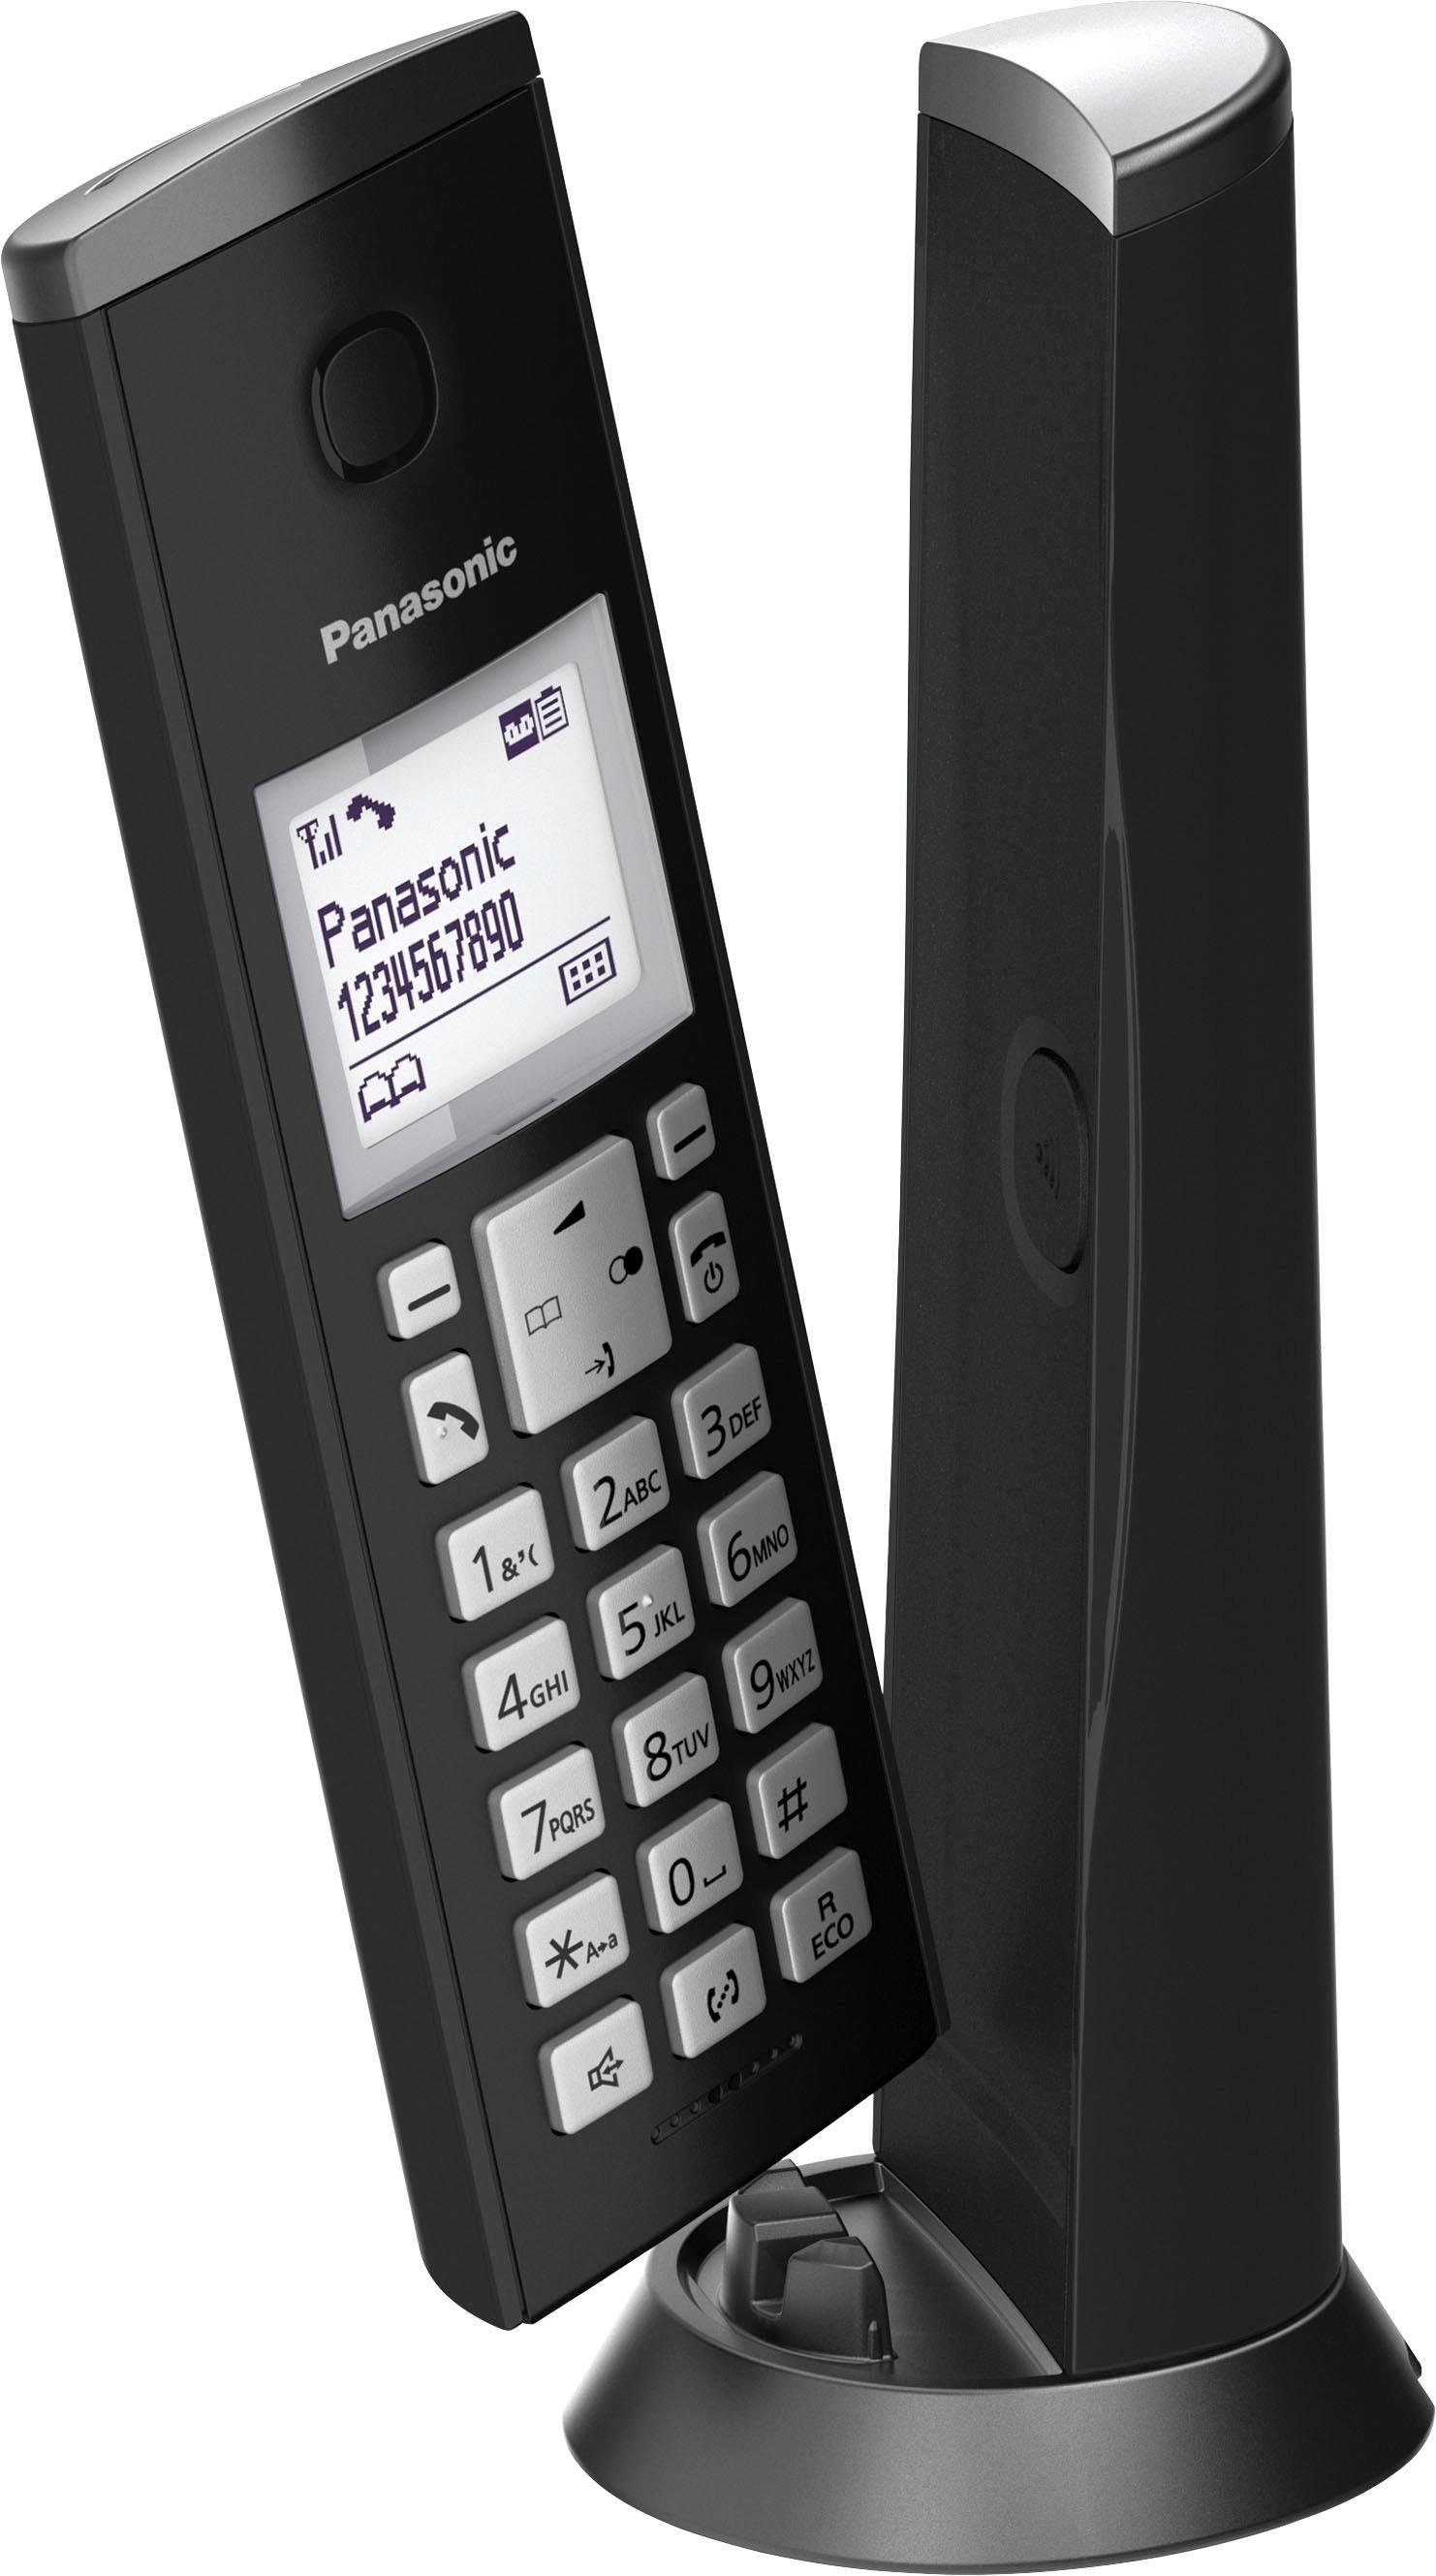 18 4 KX-TGK220 zu / Wege (Mobilteile: 1, Panasonic 200 Schnurloses DECT-Telefon Standby-/Gesprächszeit bis Navigationstaste),